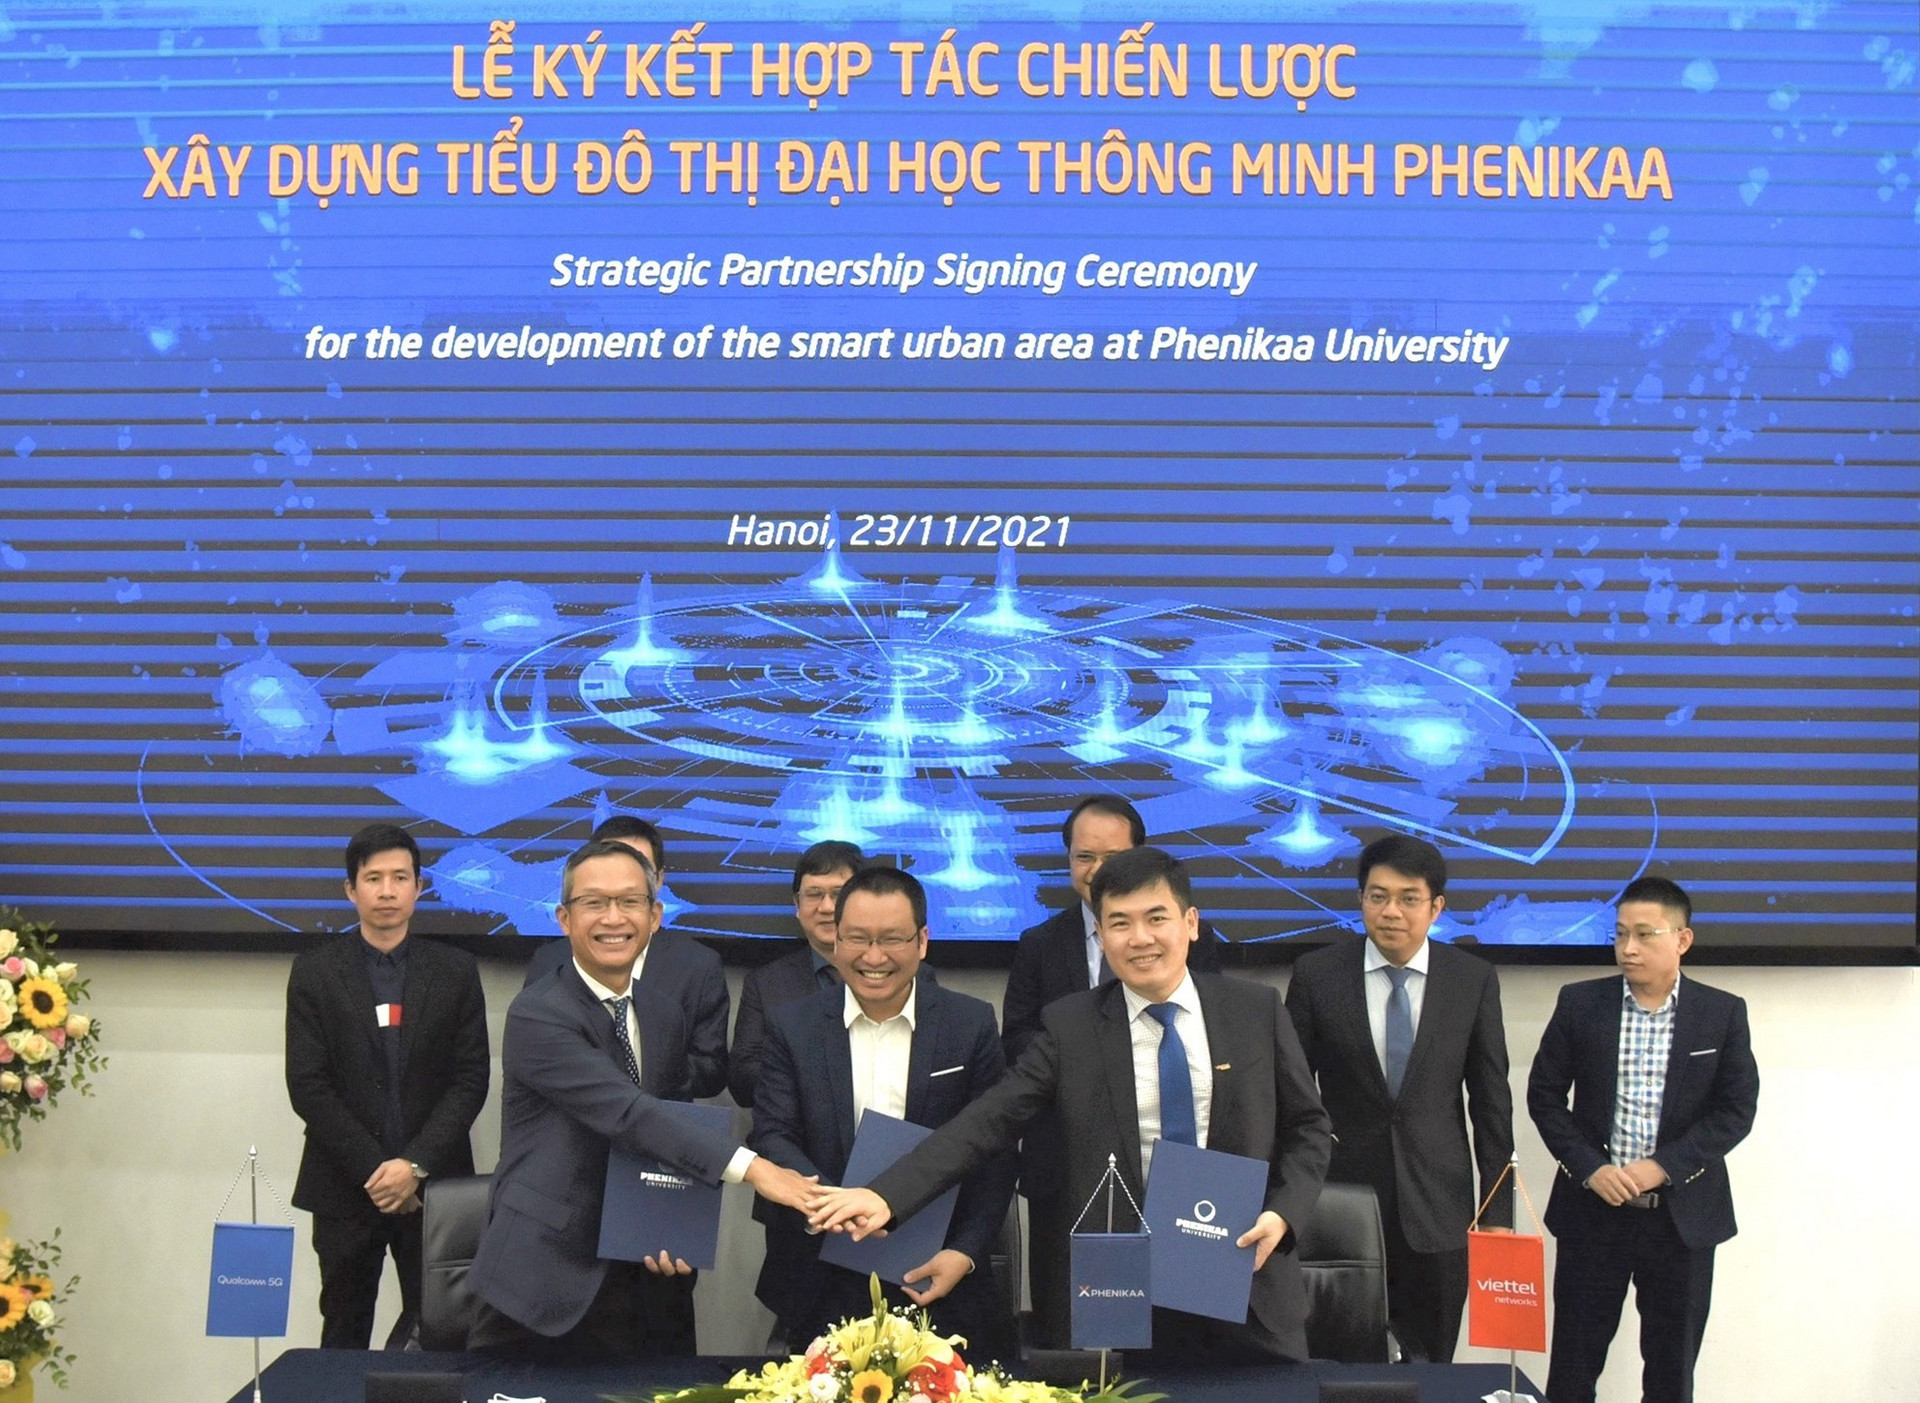 Xây dựng tiểu đô thị đại học thông minh đầu tiên tại Việt Nam - 1